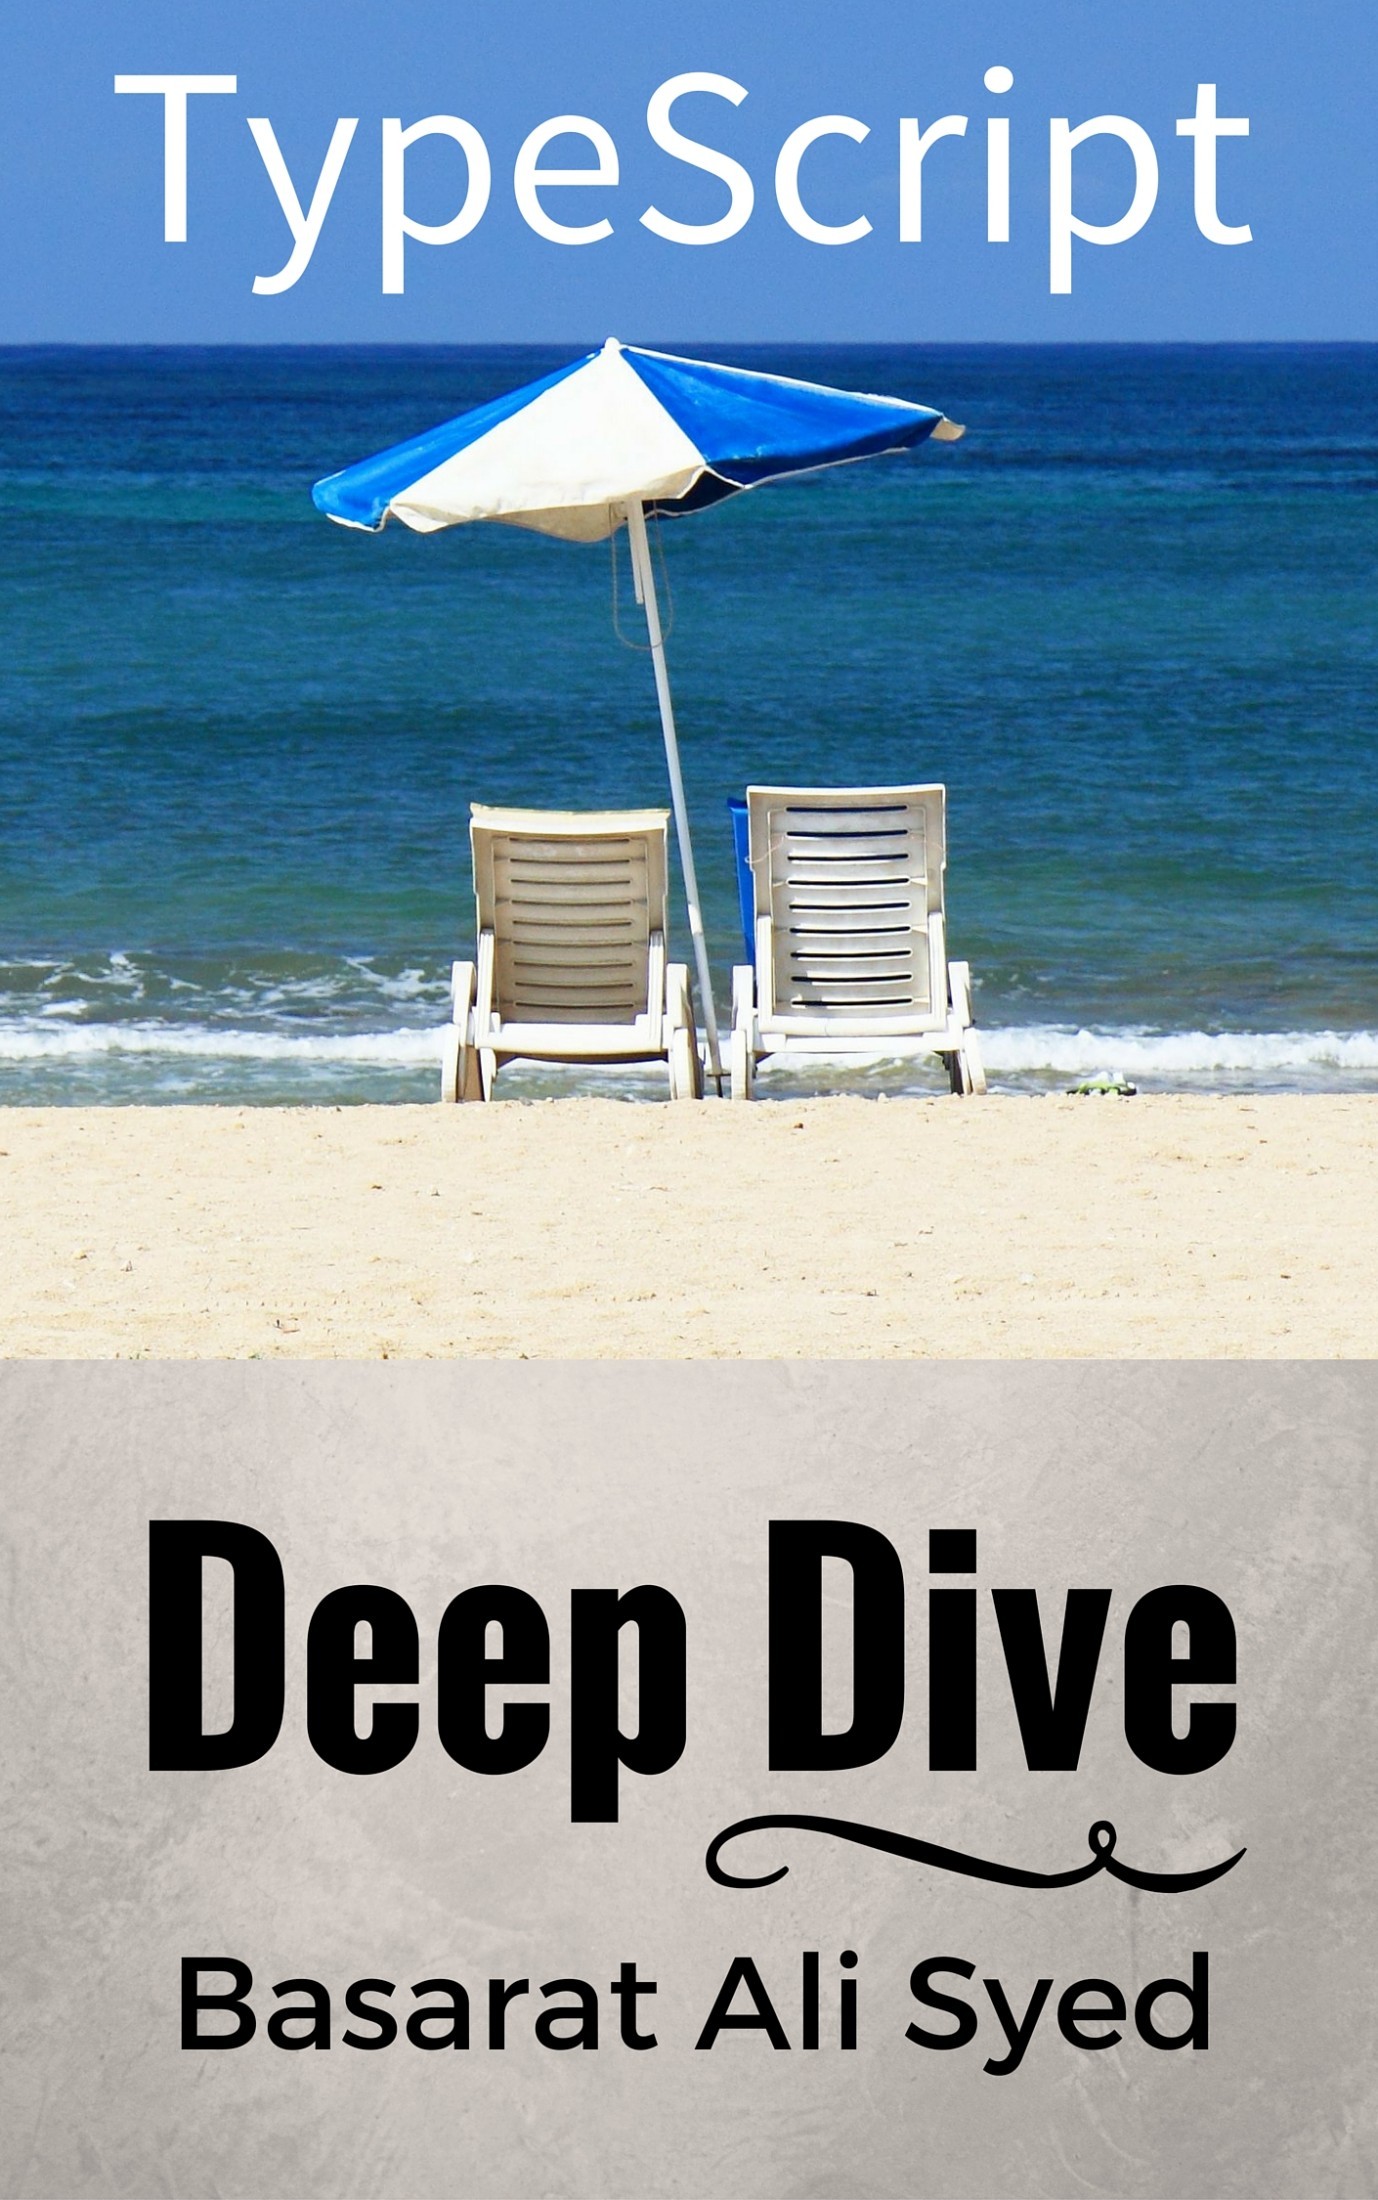 Typescript Deep Dive